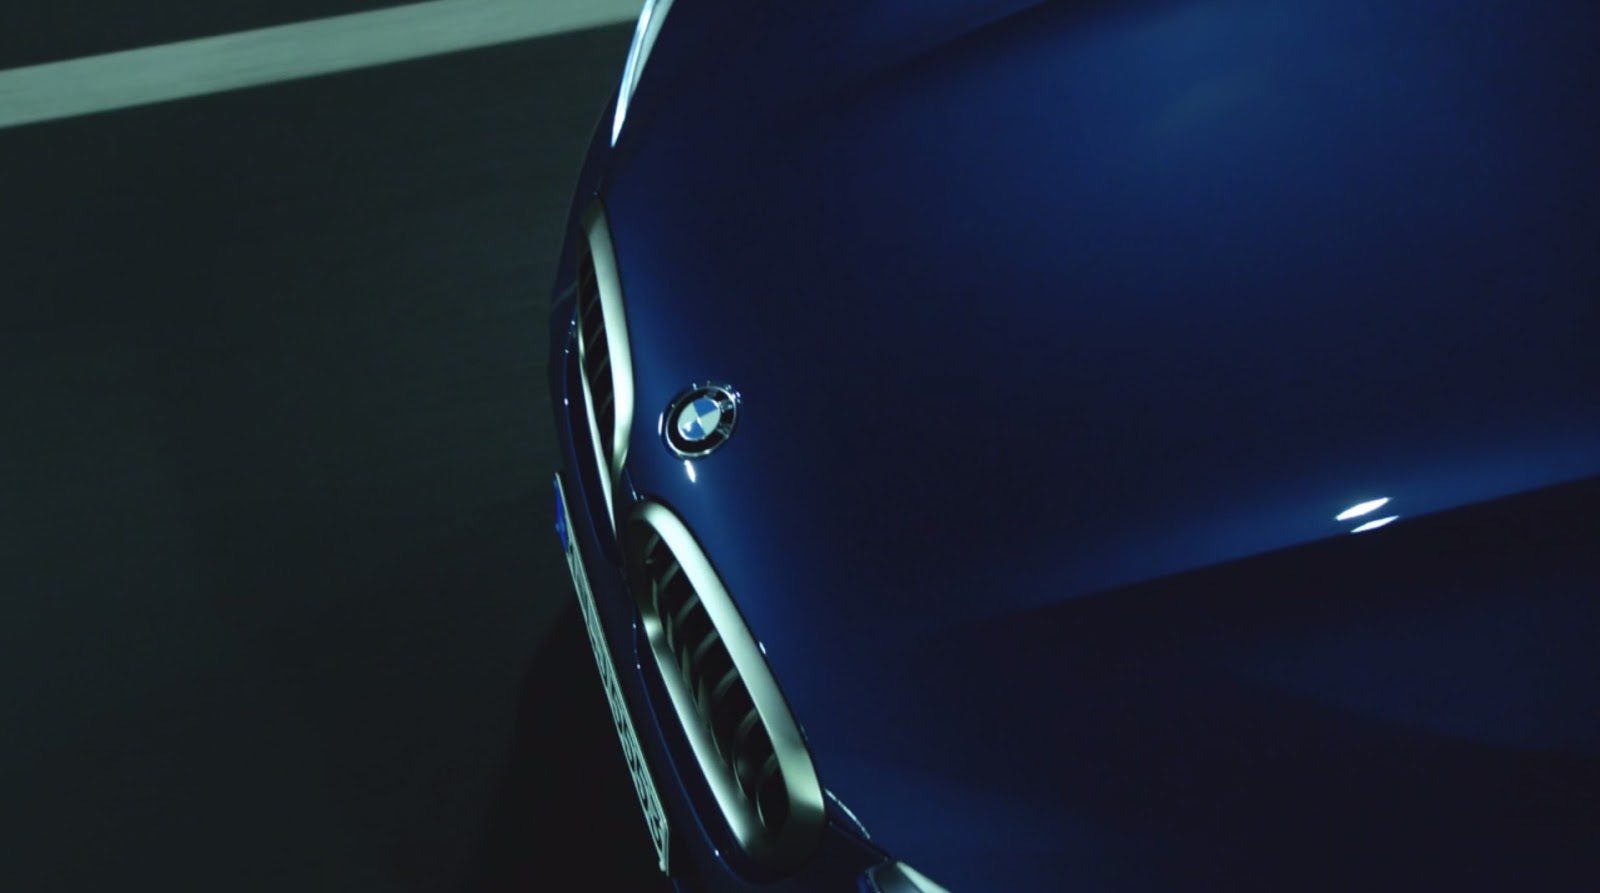 2018 BMW X3 ilk resim galerisi